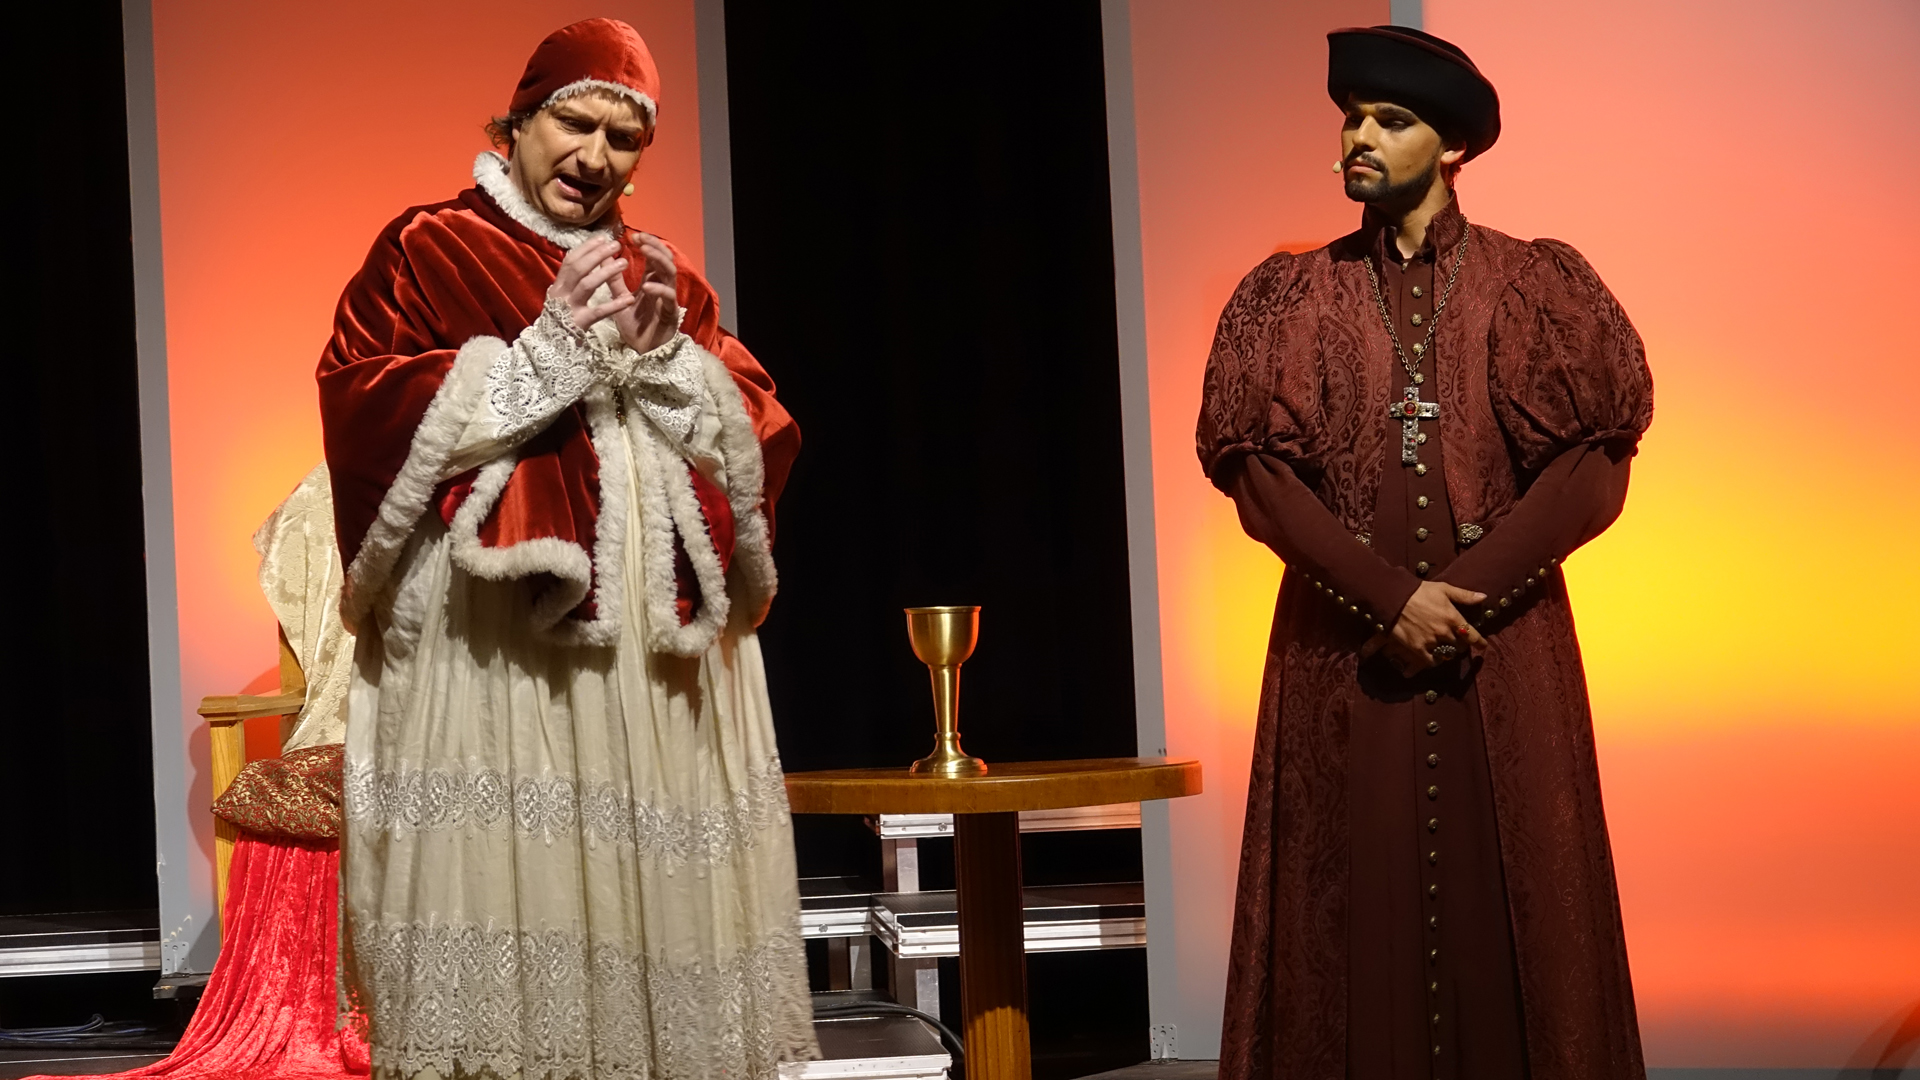 Papst Leo X. (Ralf David) und sein Nuntio Aleandro (Carlo Degen) nehmen Luther nicht ernst